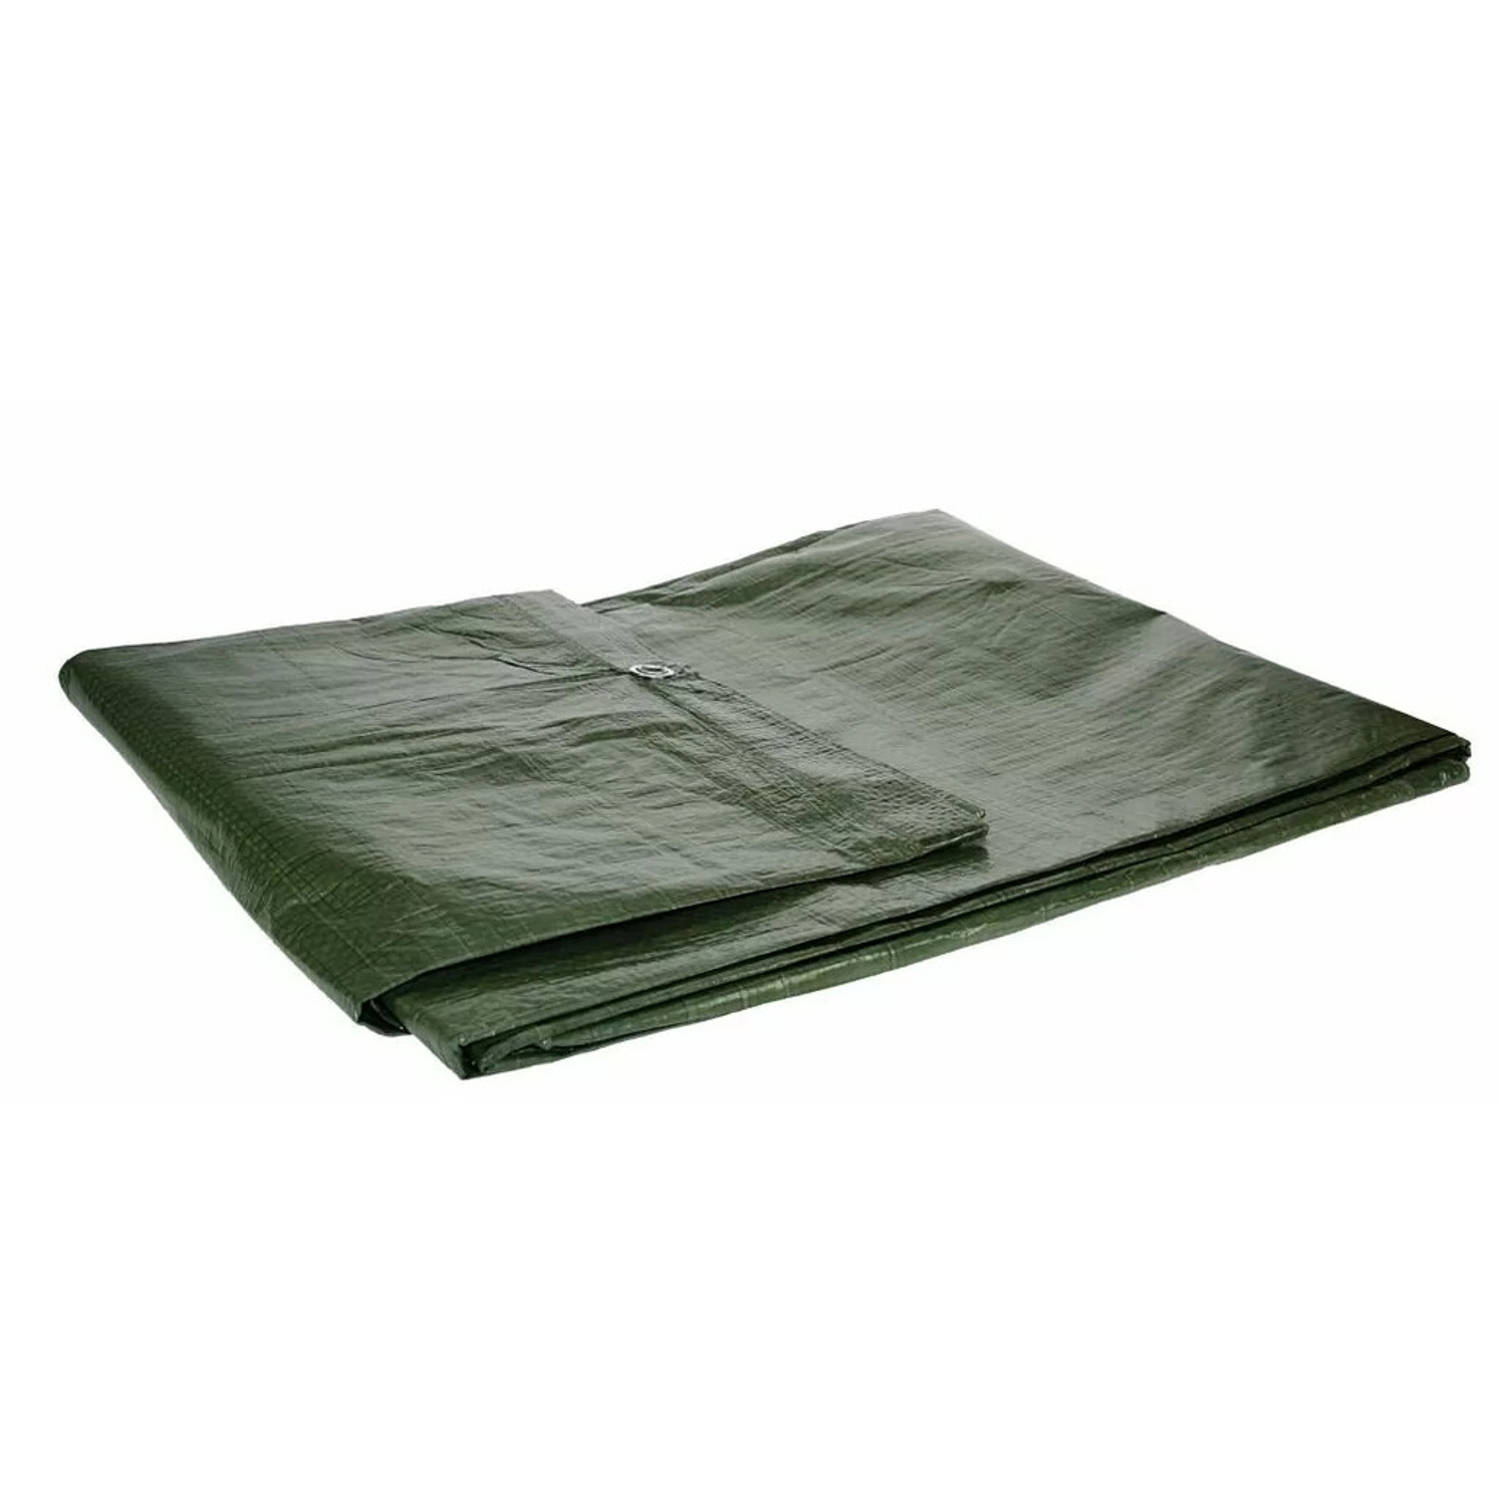 Afdekzeil/dekzeil groen waterdicht kunststof 90 gr/m2 - 500 x 800 cm - Afdekzeilen